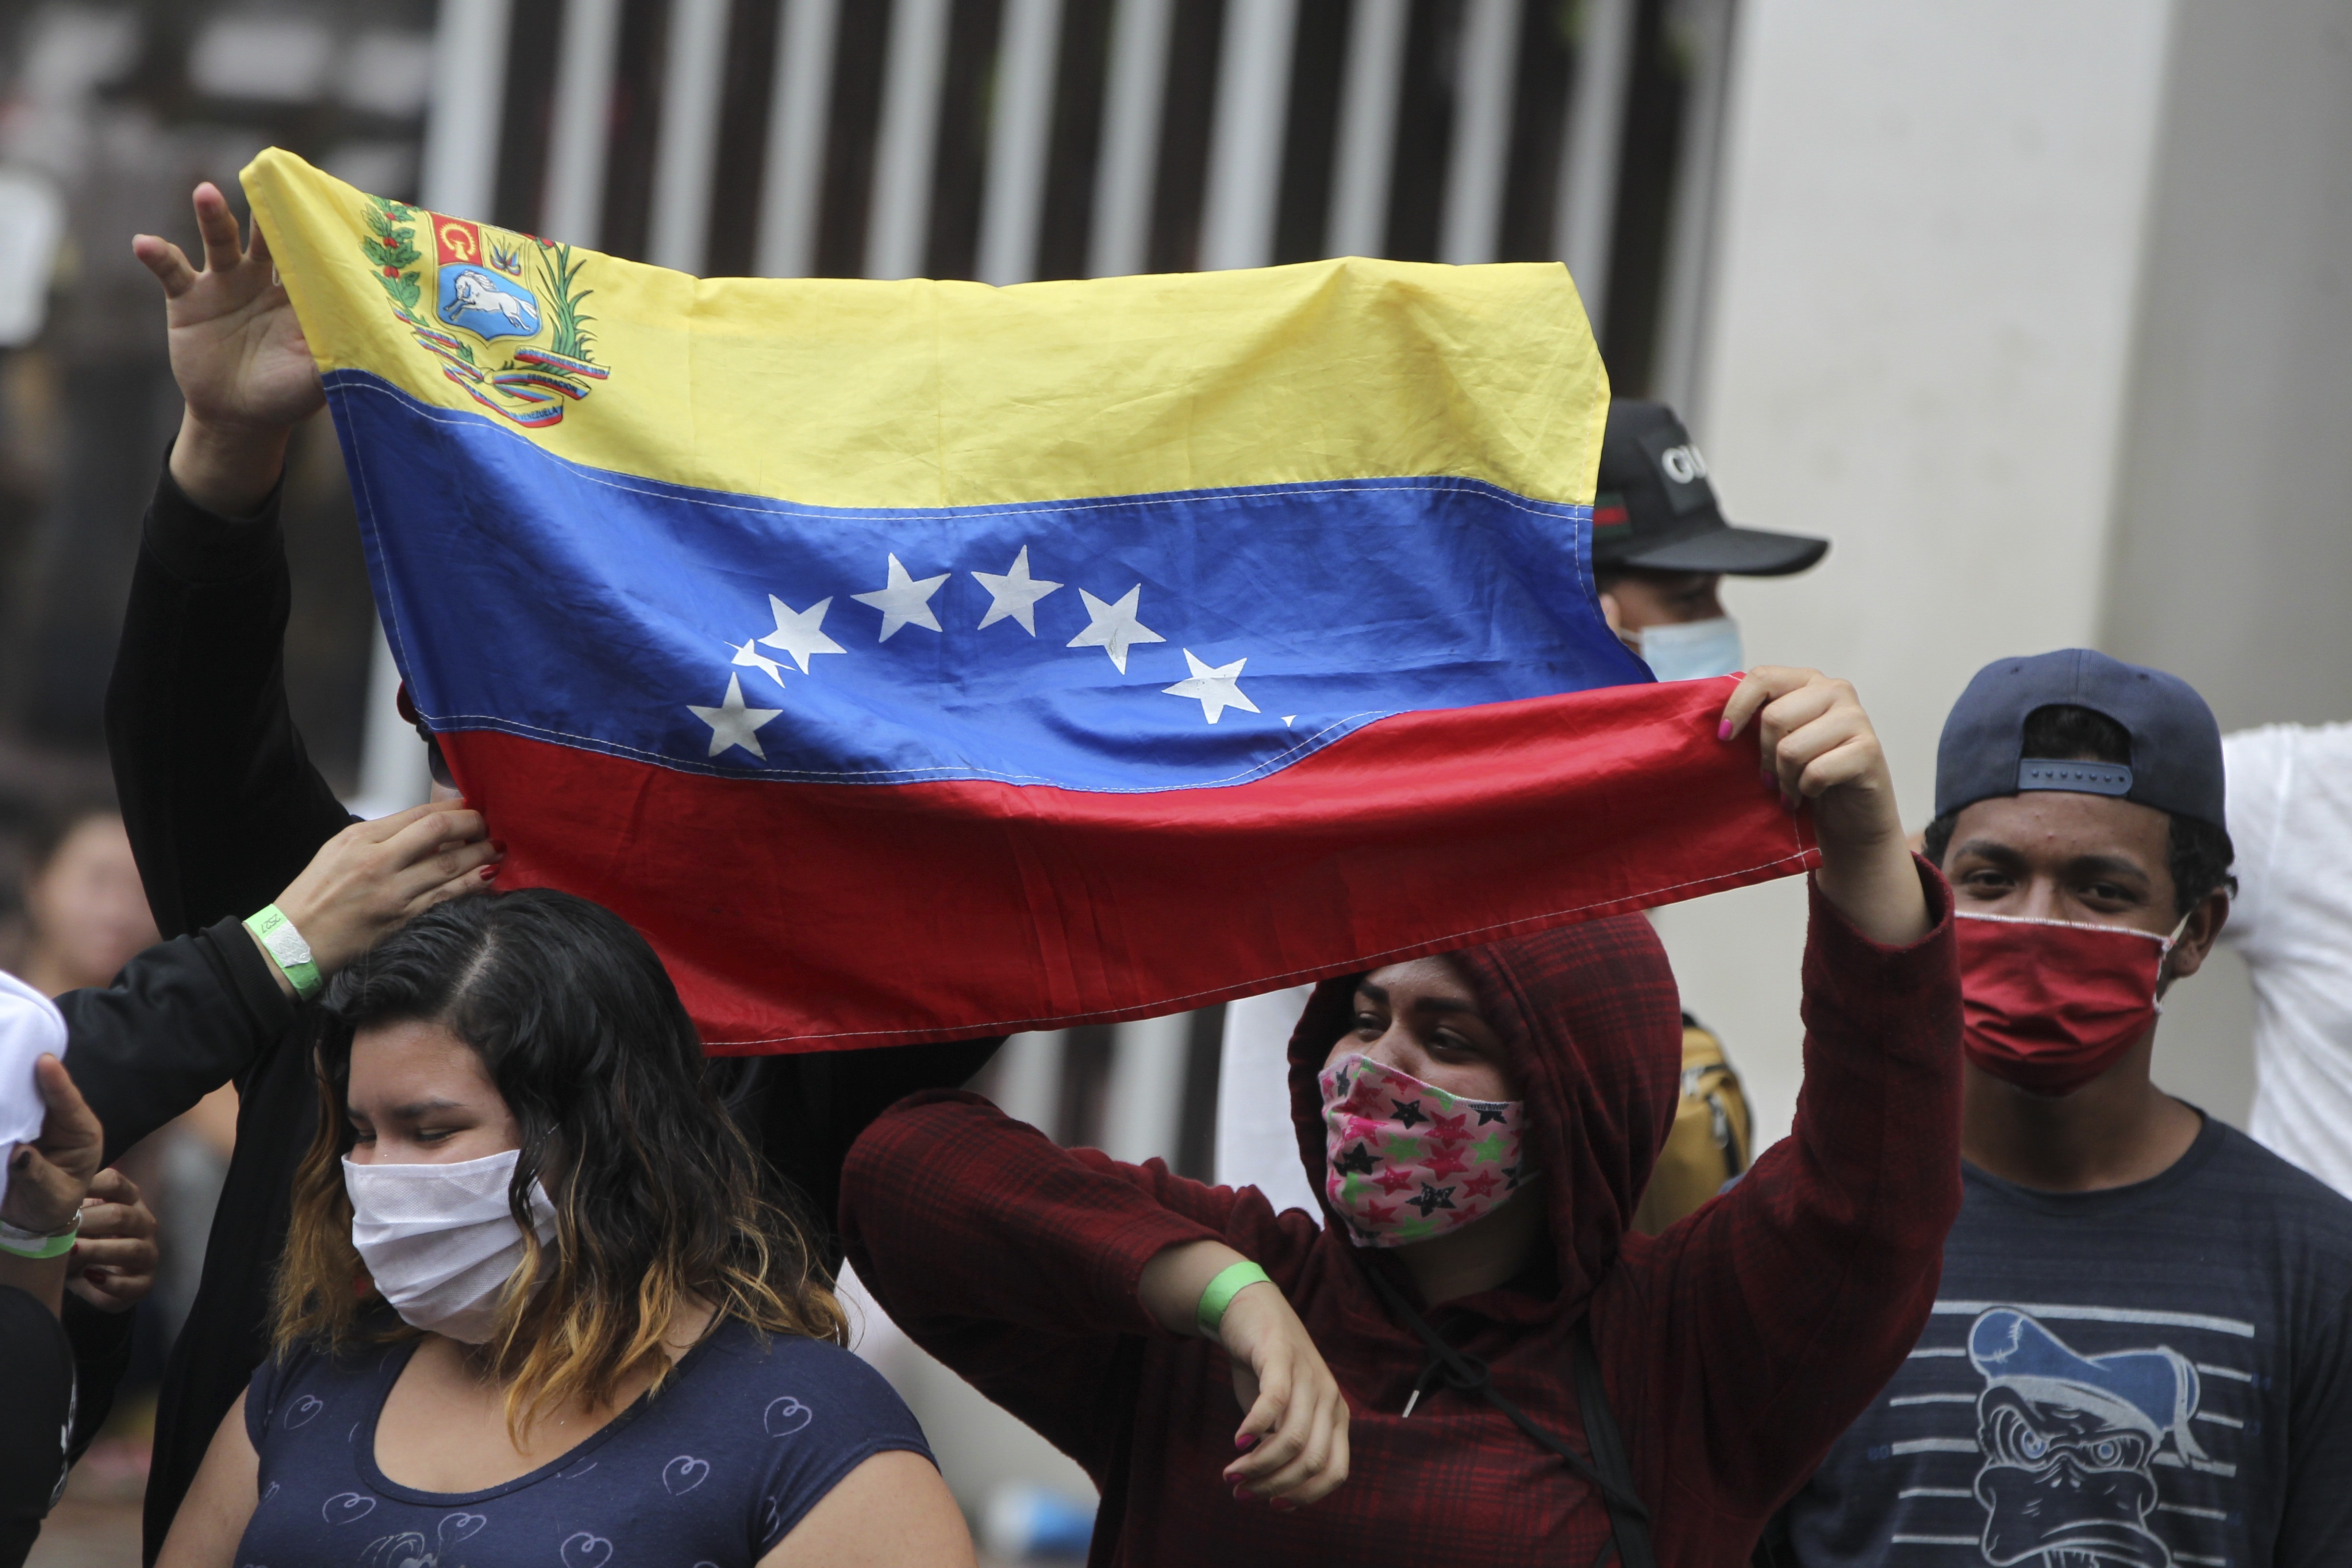 El embajador de Venezuela, Álvaro Sánchez Cordero, dijo a los periodistas que los nuevos documentos fueron entregados a la Embajada y se están distribuyendo lo más rápido posible (EFE/Ernesto Guzmán Jr./Archivo)